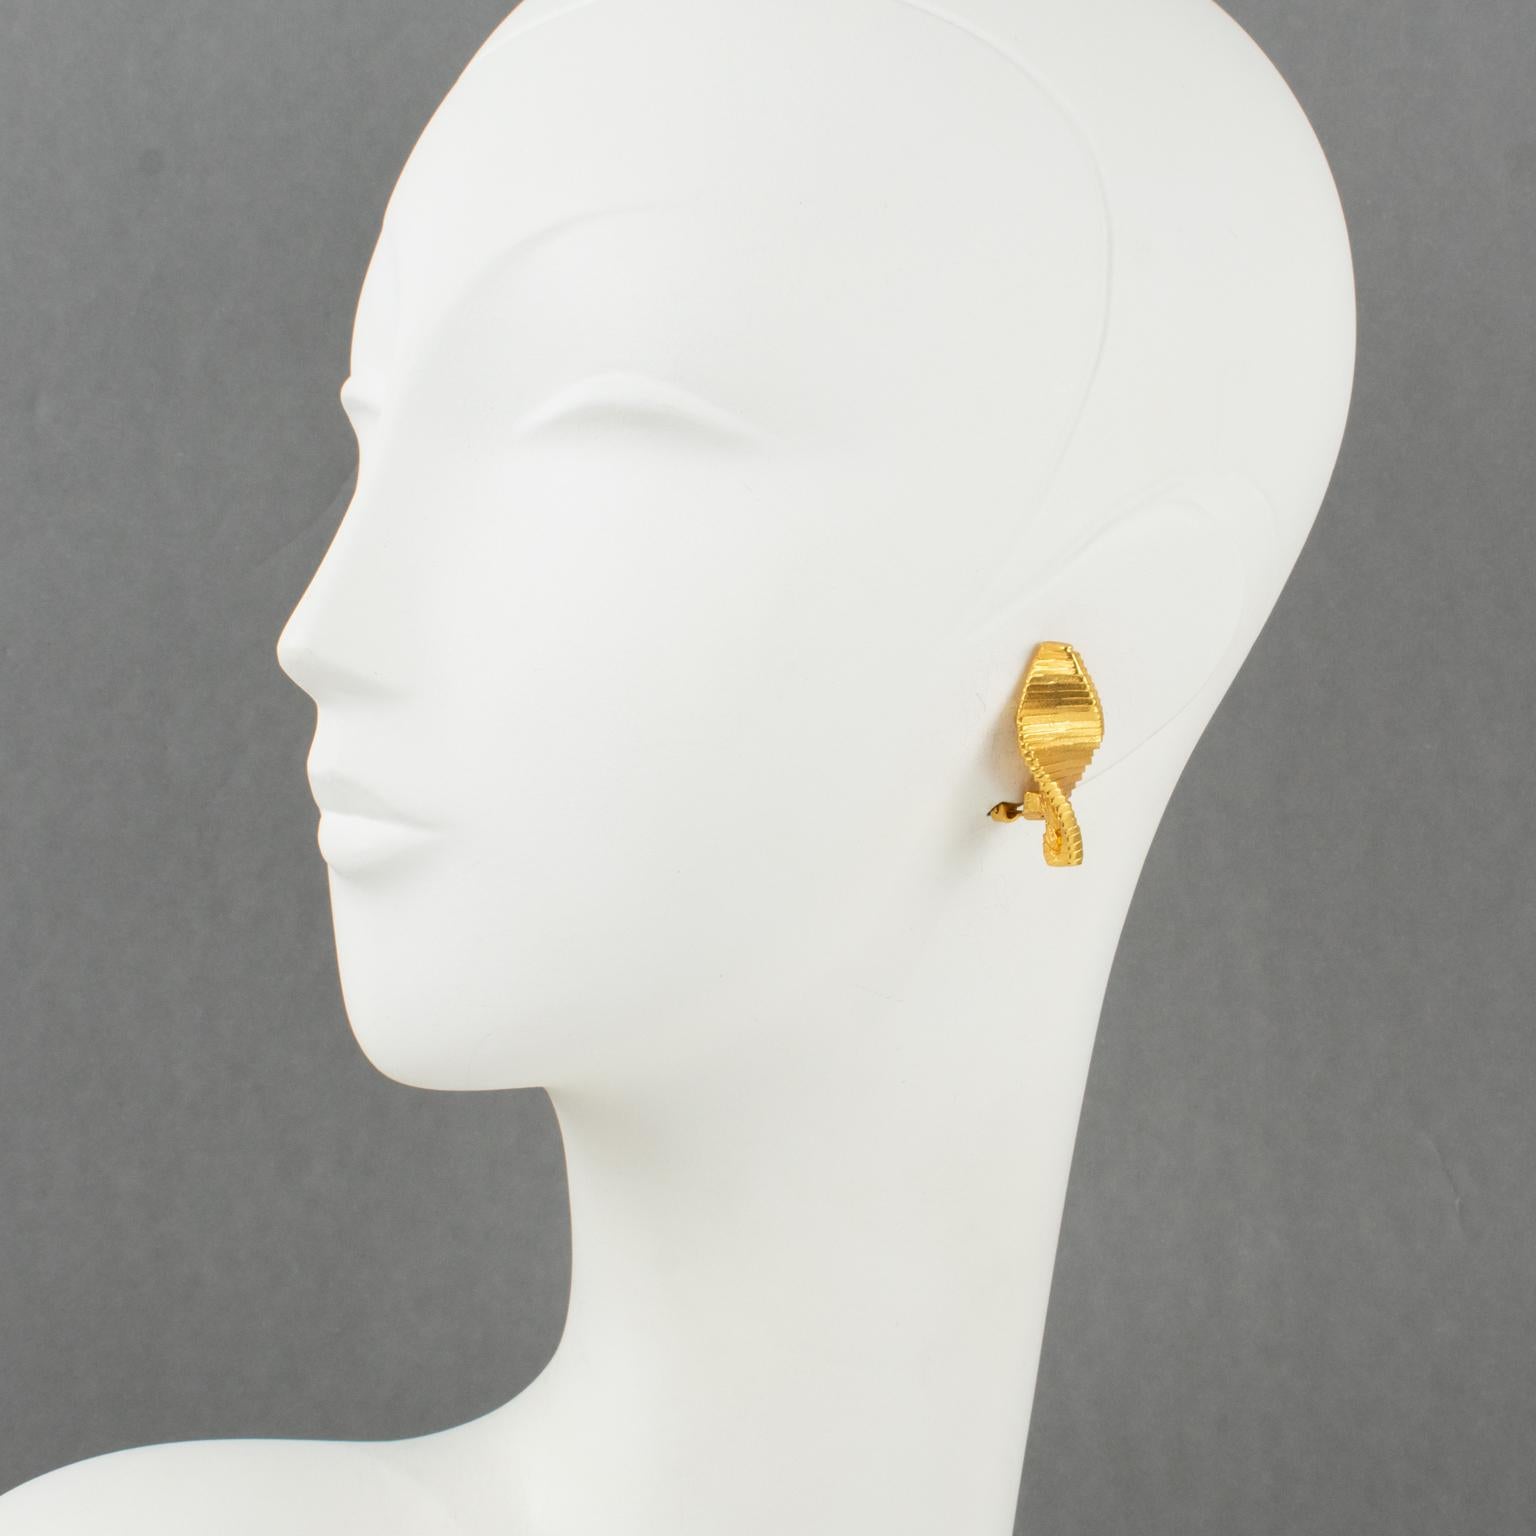 Ces ravissantes boucles d'oreilles clips géométriques modernistes conçues par Claude Montana présentent un métal doré aux dimensions futuristes, tout en rayures avec une finition satinée et un motif sculpté. Le logo 